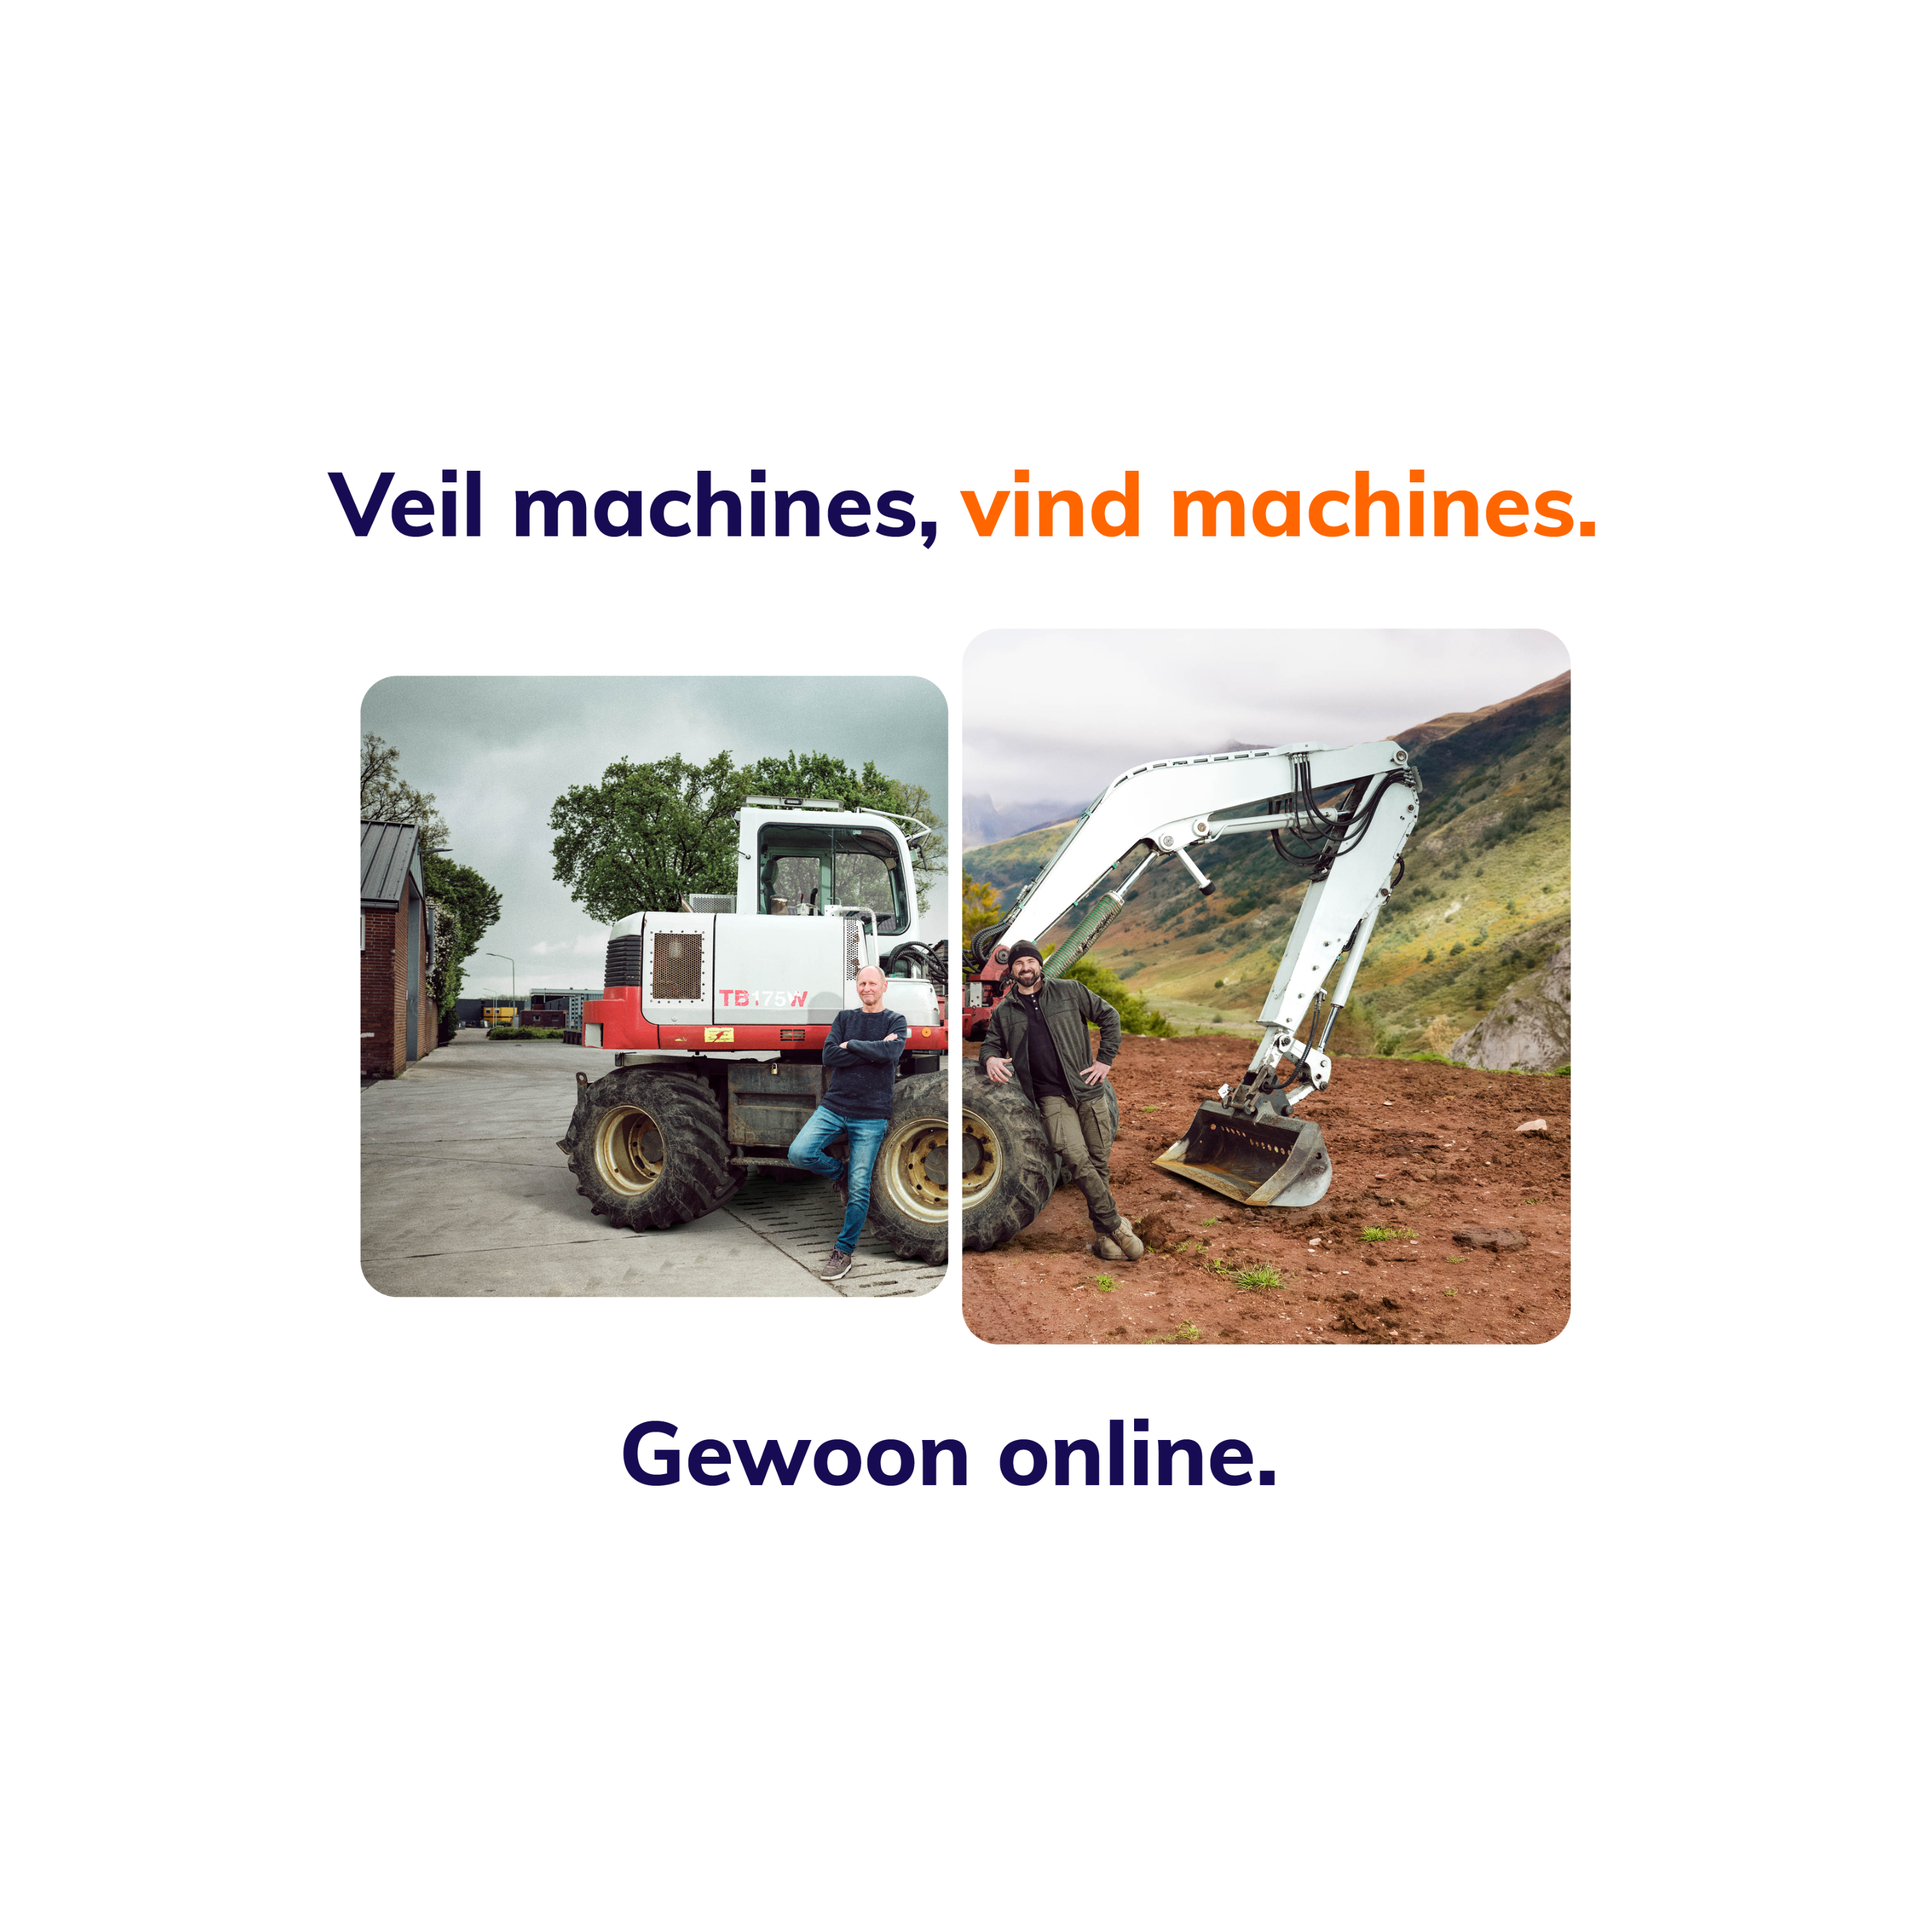 Veil machines, vind machines